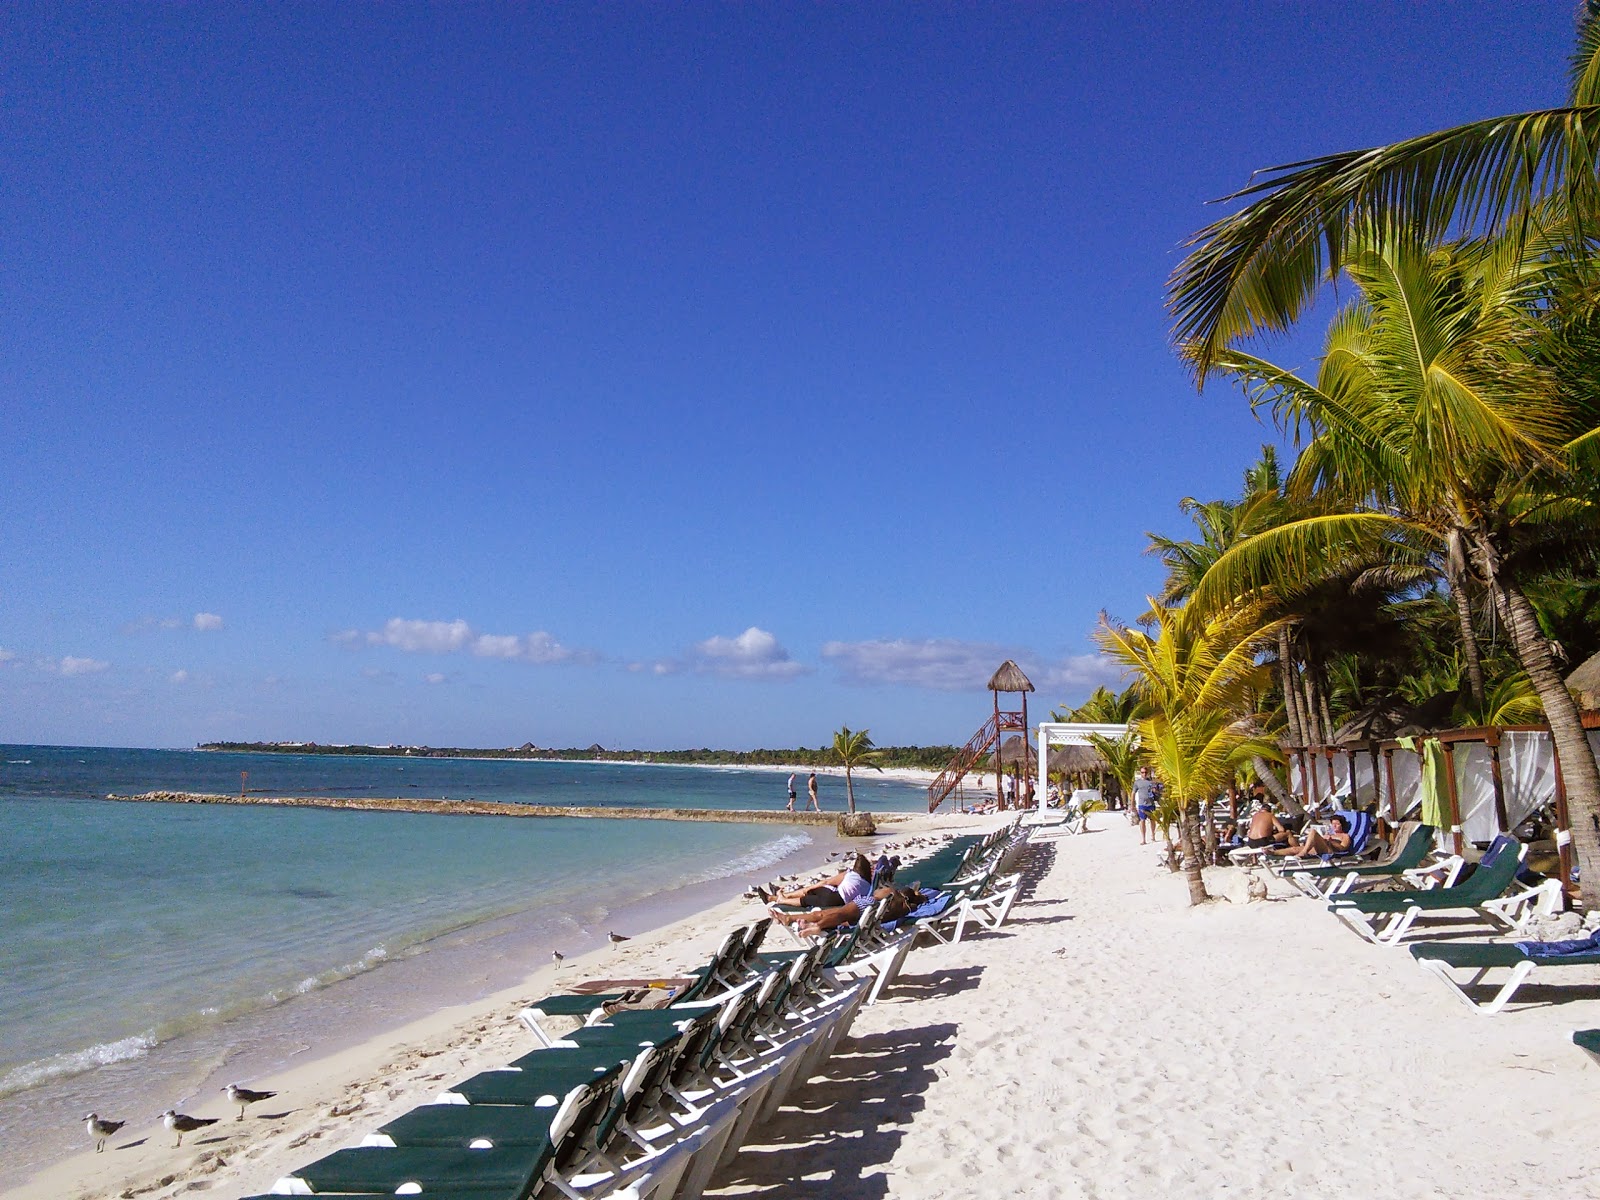 Foto di El Dorado hotel beach con una superficie del sabbia fine e luminosa